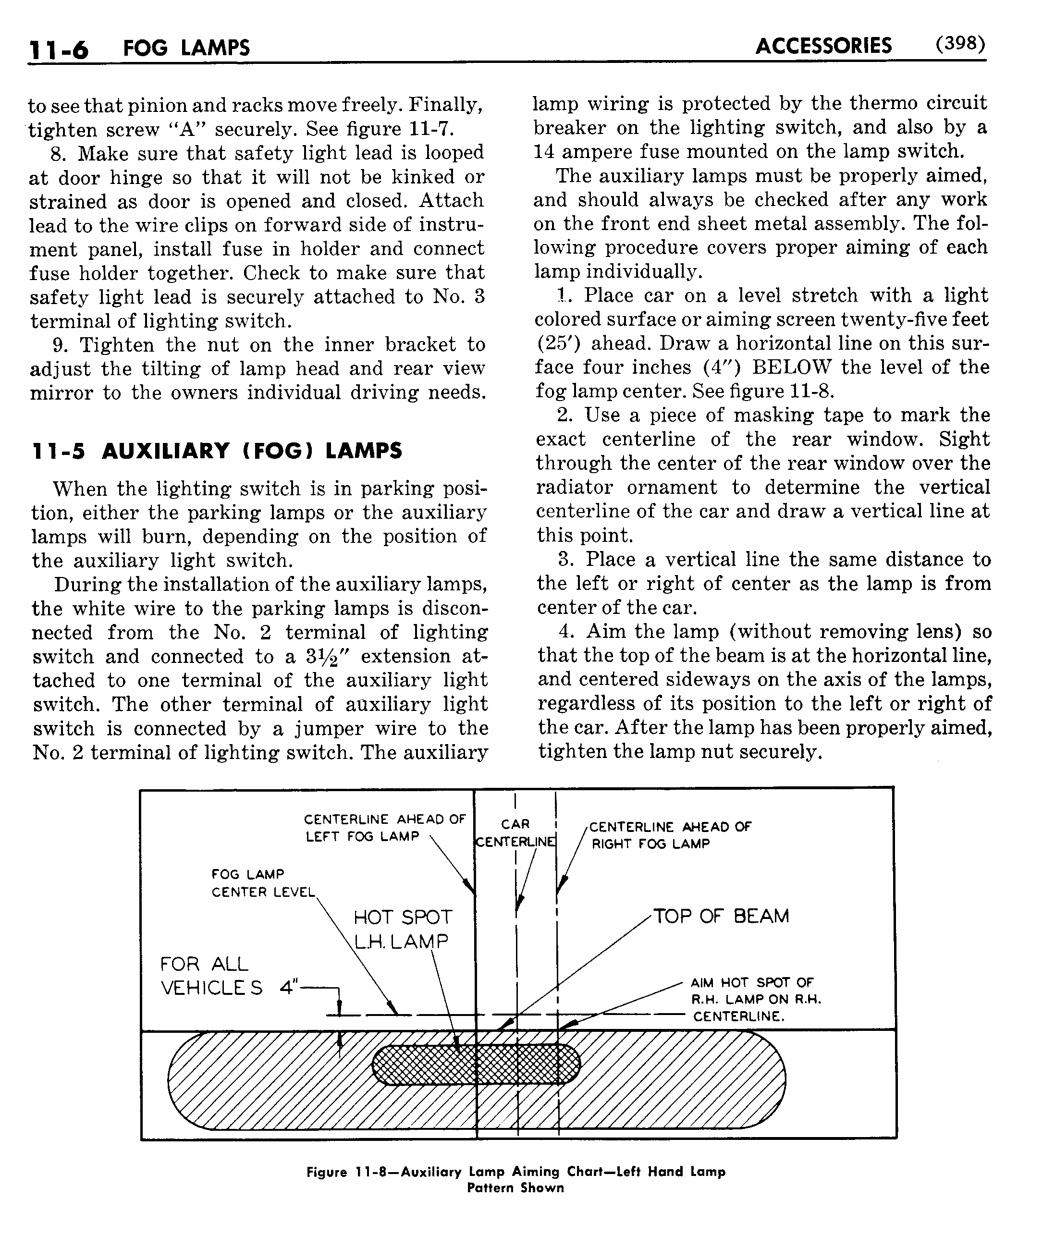 n_12 1951 Buick Shop Manual - Accessories-006-006.jpg